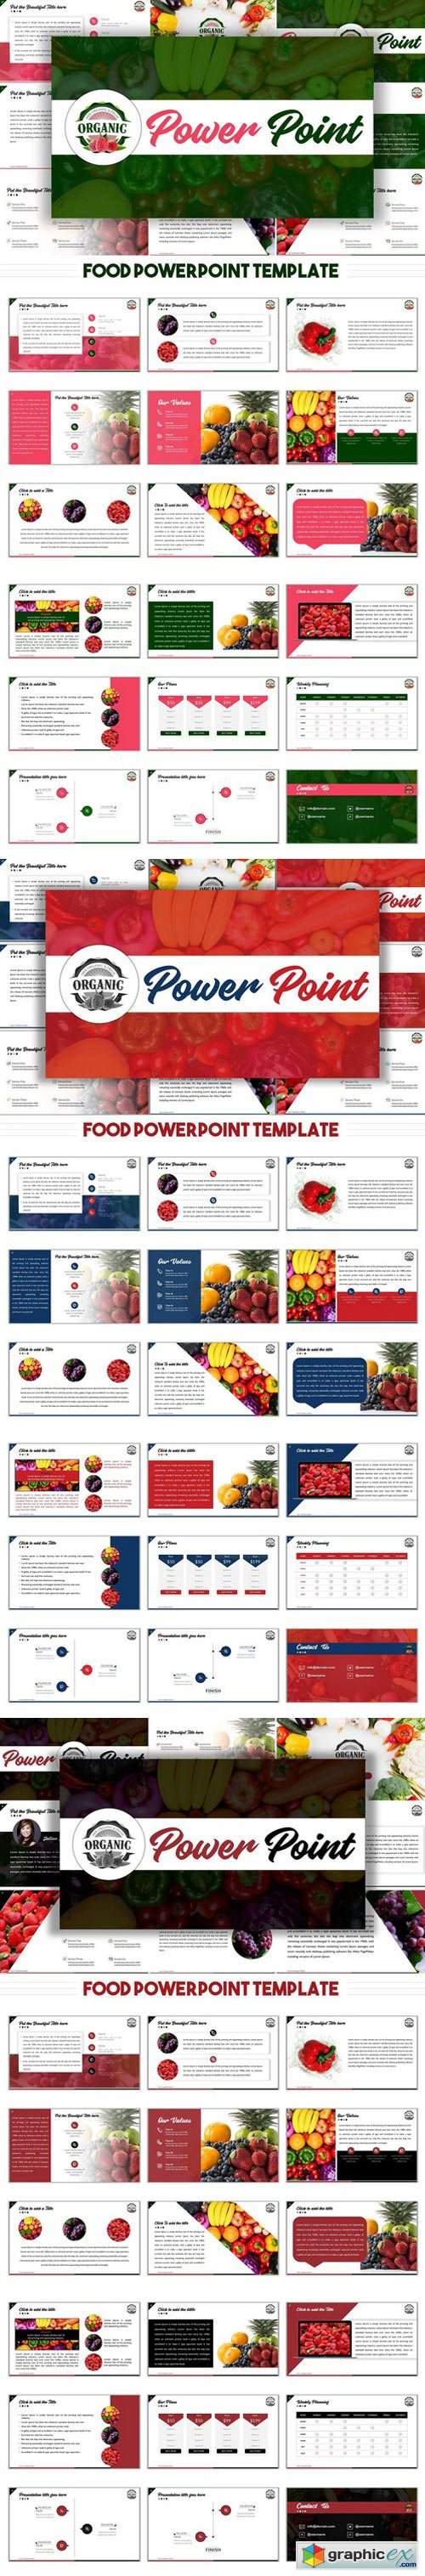 [PPTX] Food PowerPoint Presentation